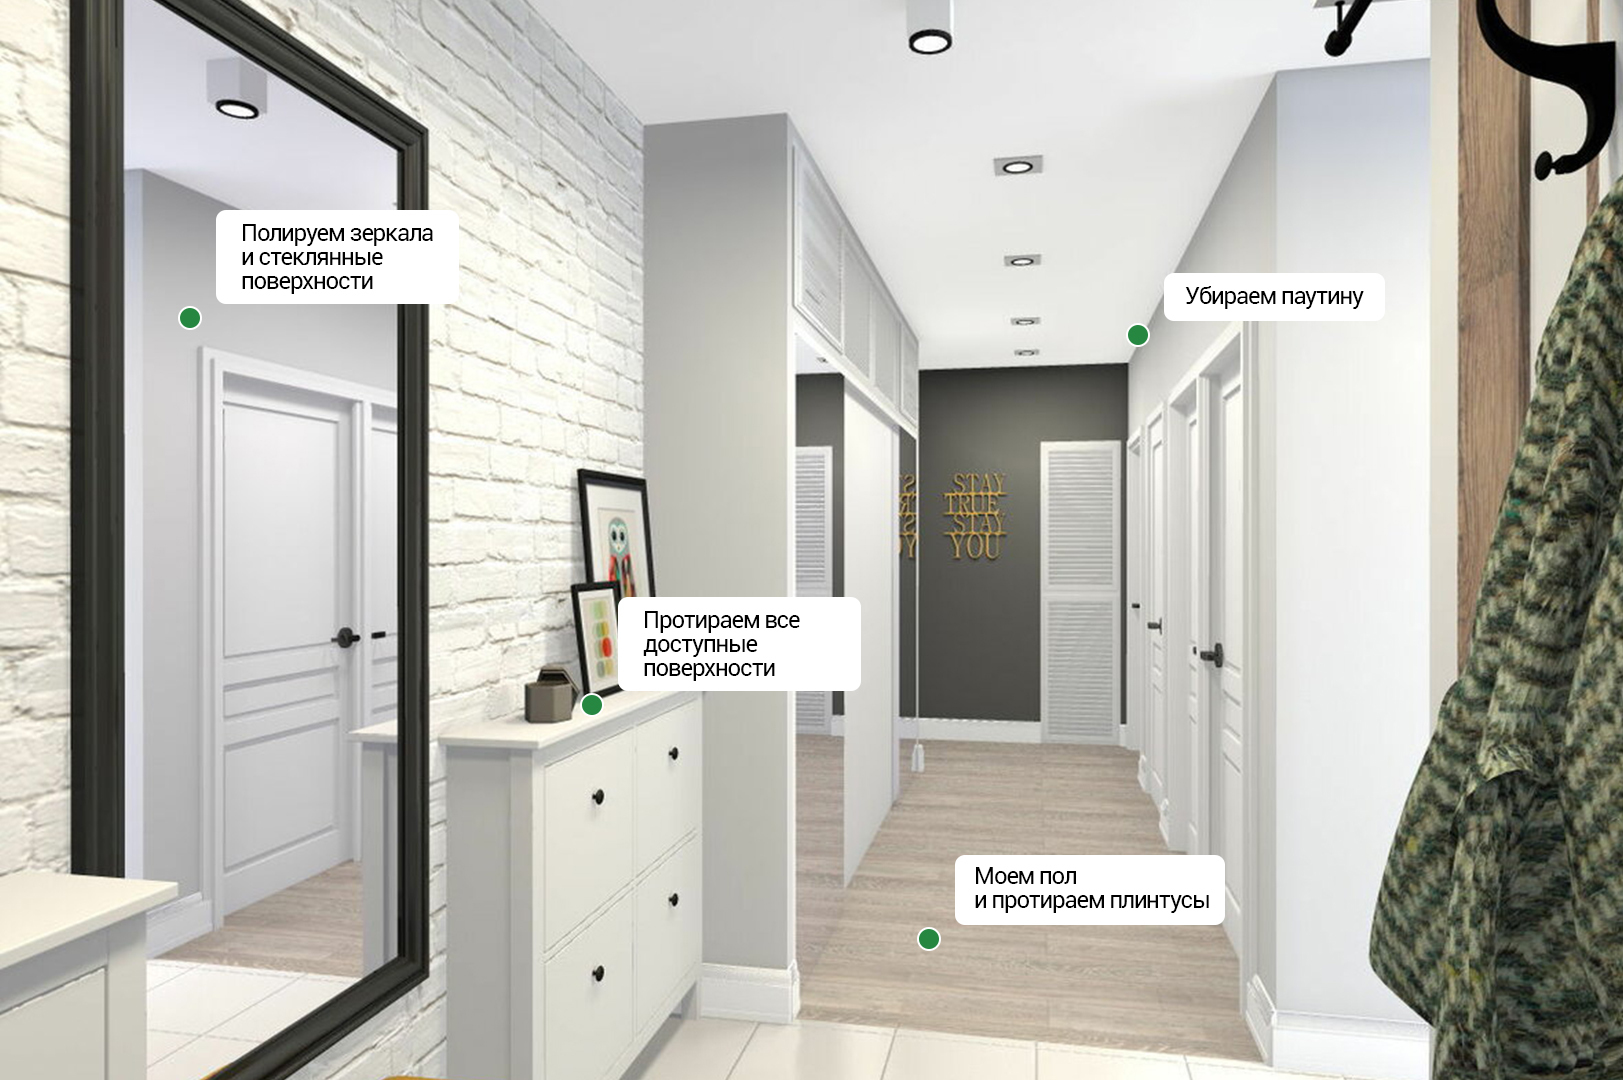 Прихожая в современном стиле в узкий коридор: основные правила оформления нестандартного помещения